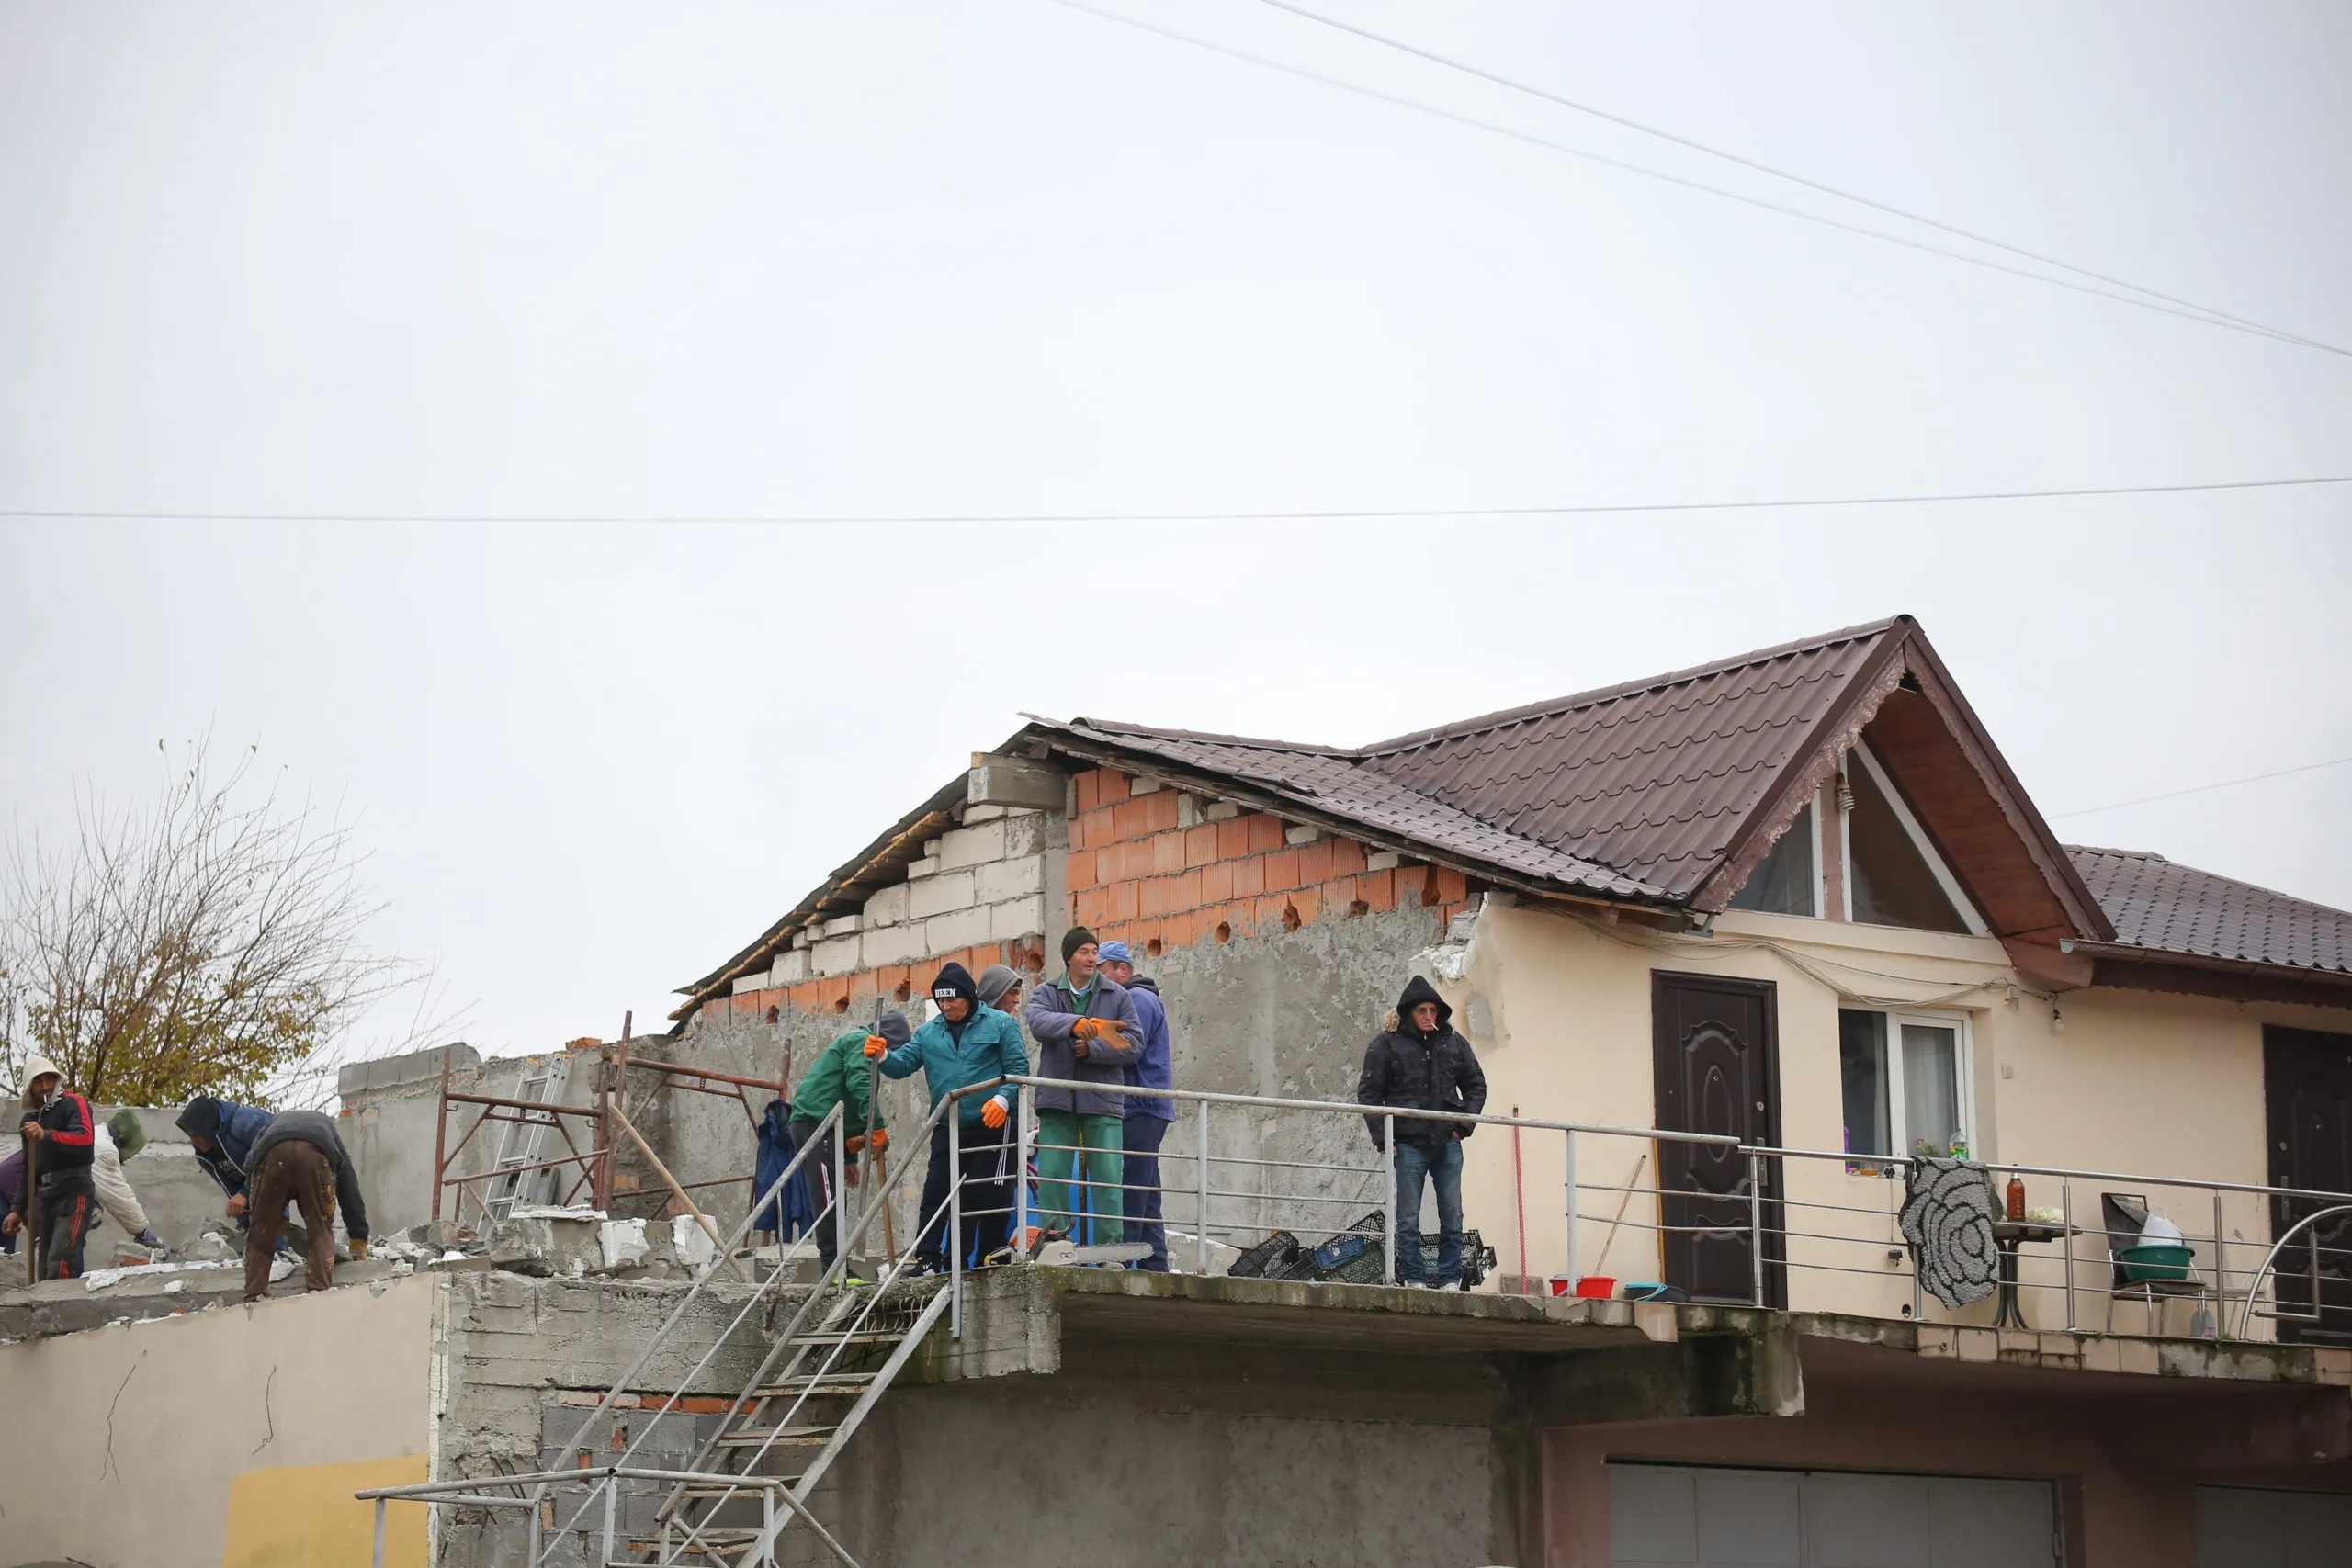 Vilă din 1 Mai, pusă la pământ de Poliţia Locală Craiova